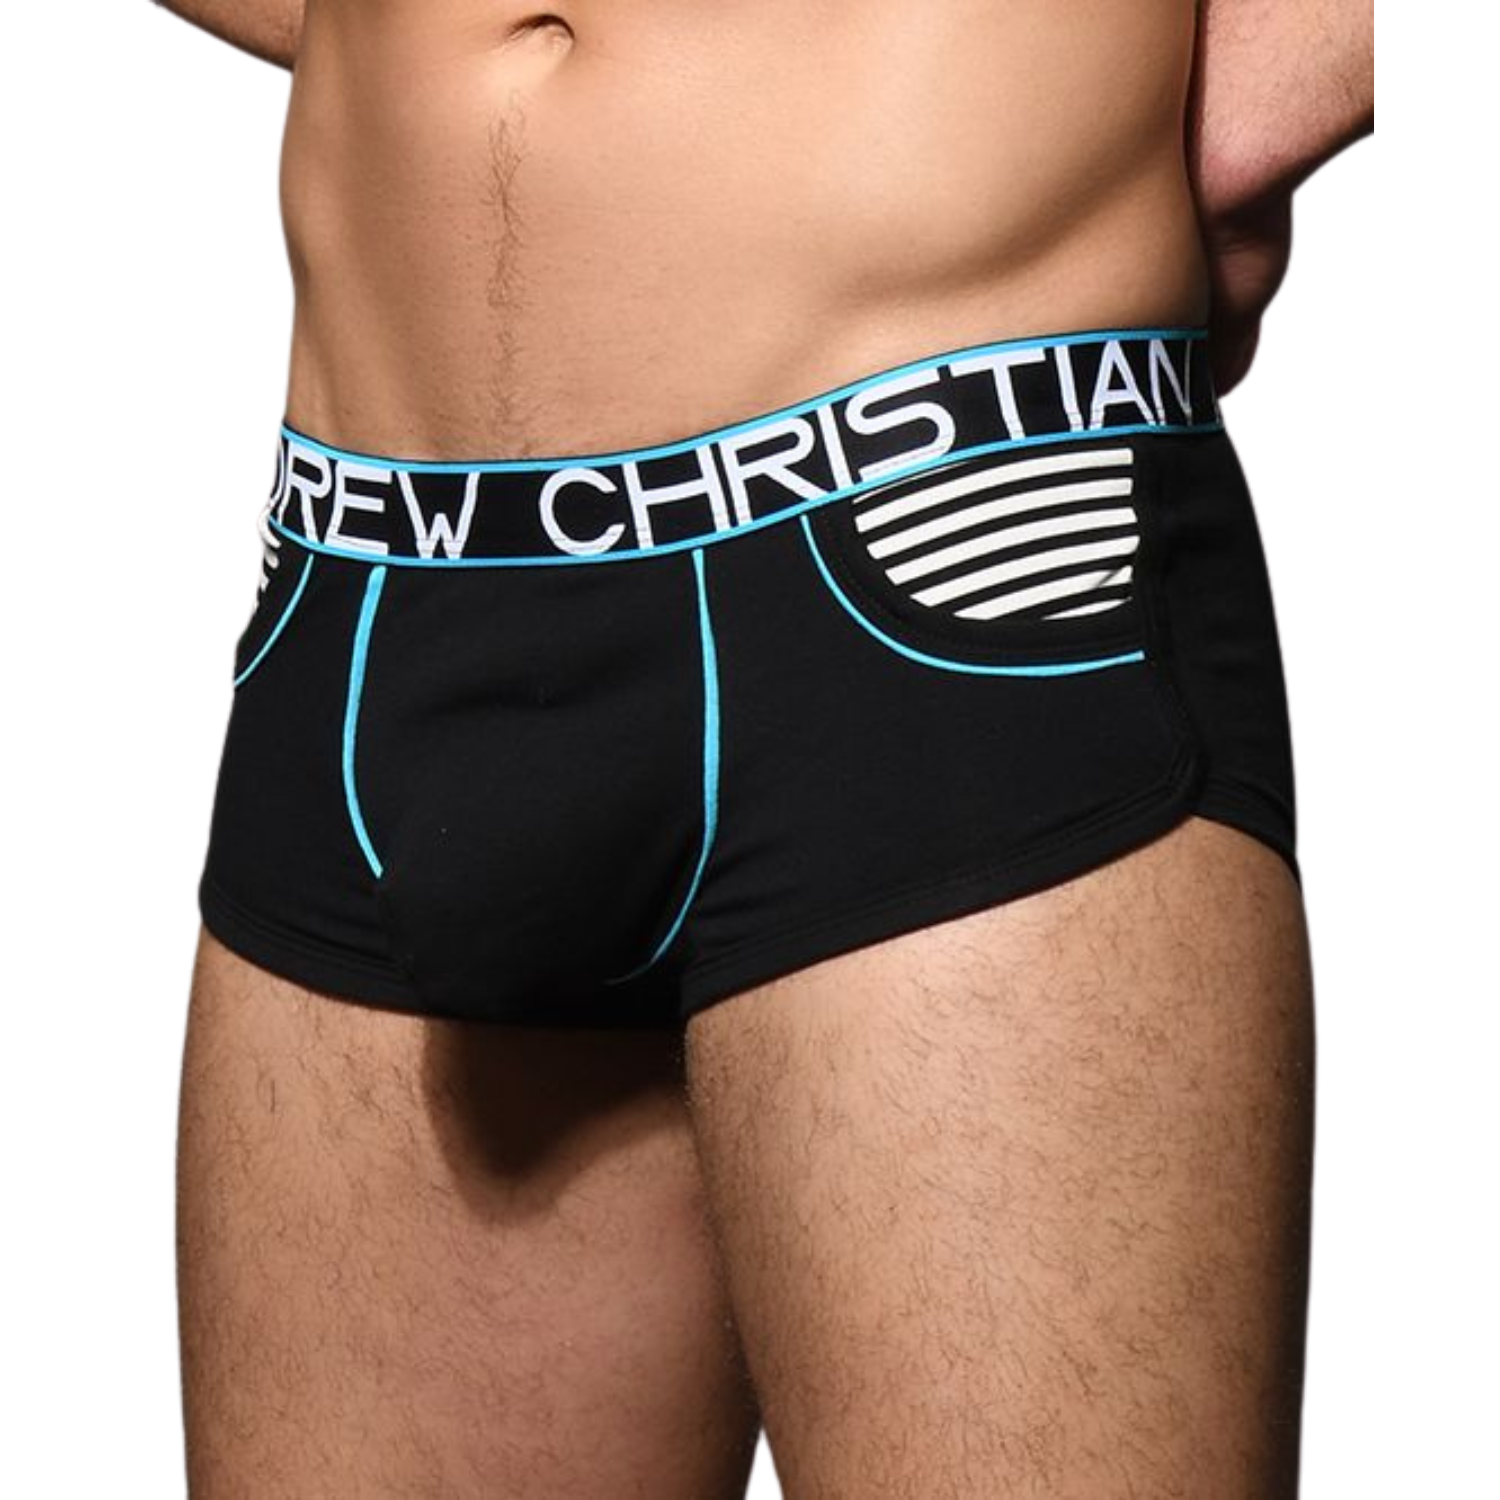 Hippe zwarte boxershort met zakken en lichtblauwe accenten. Ontworpen door Andrew Christian en te koop bij Flavourez.